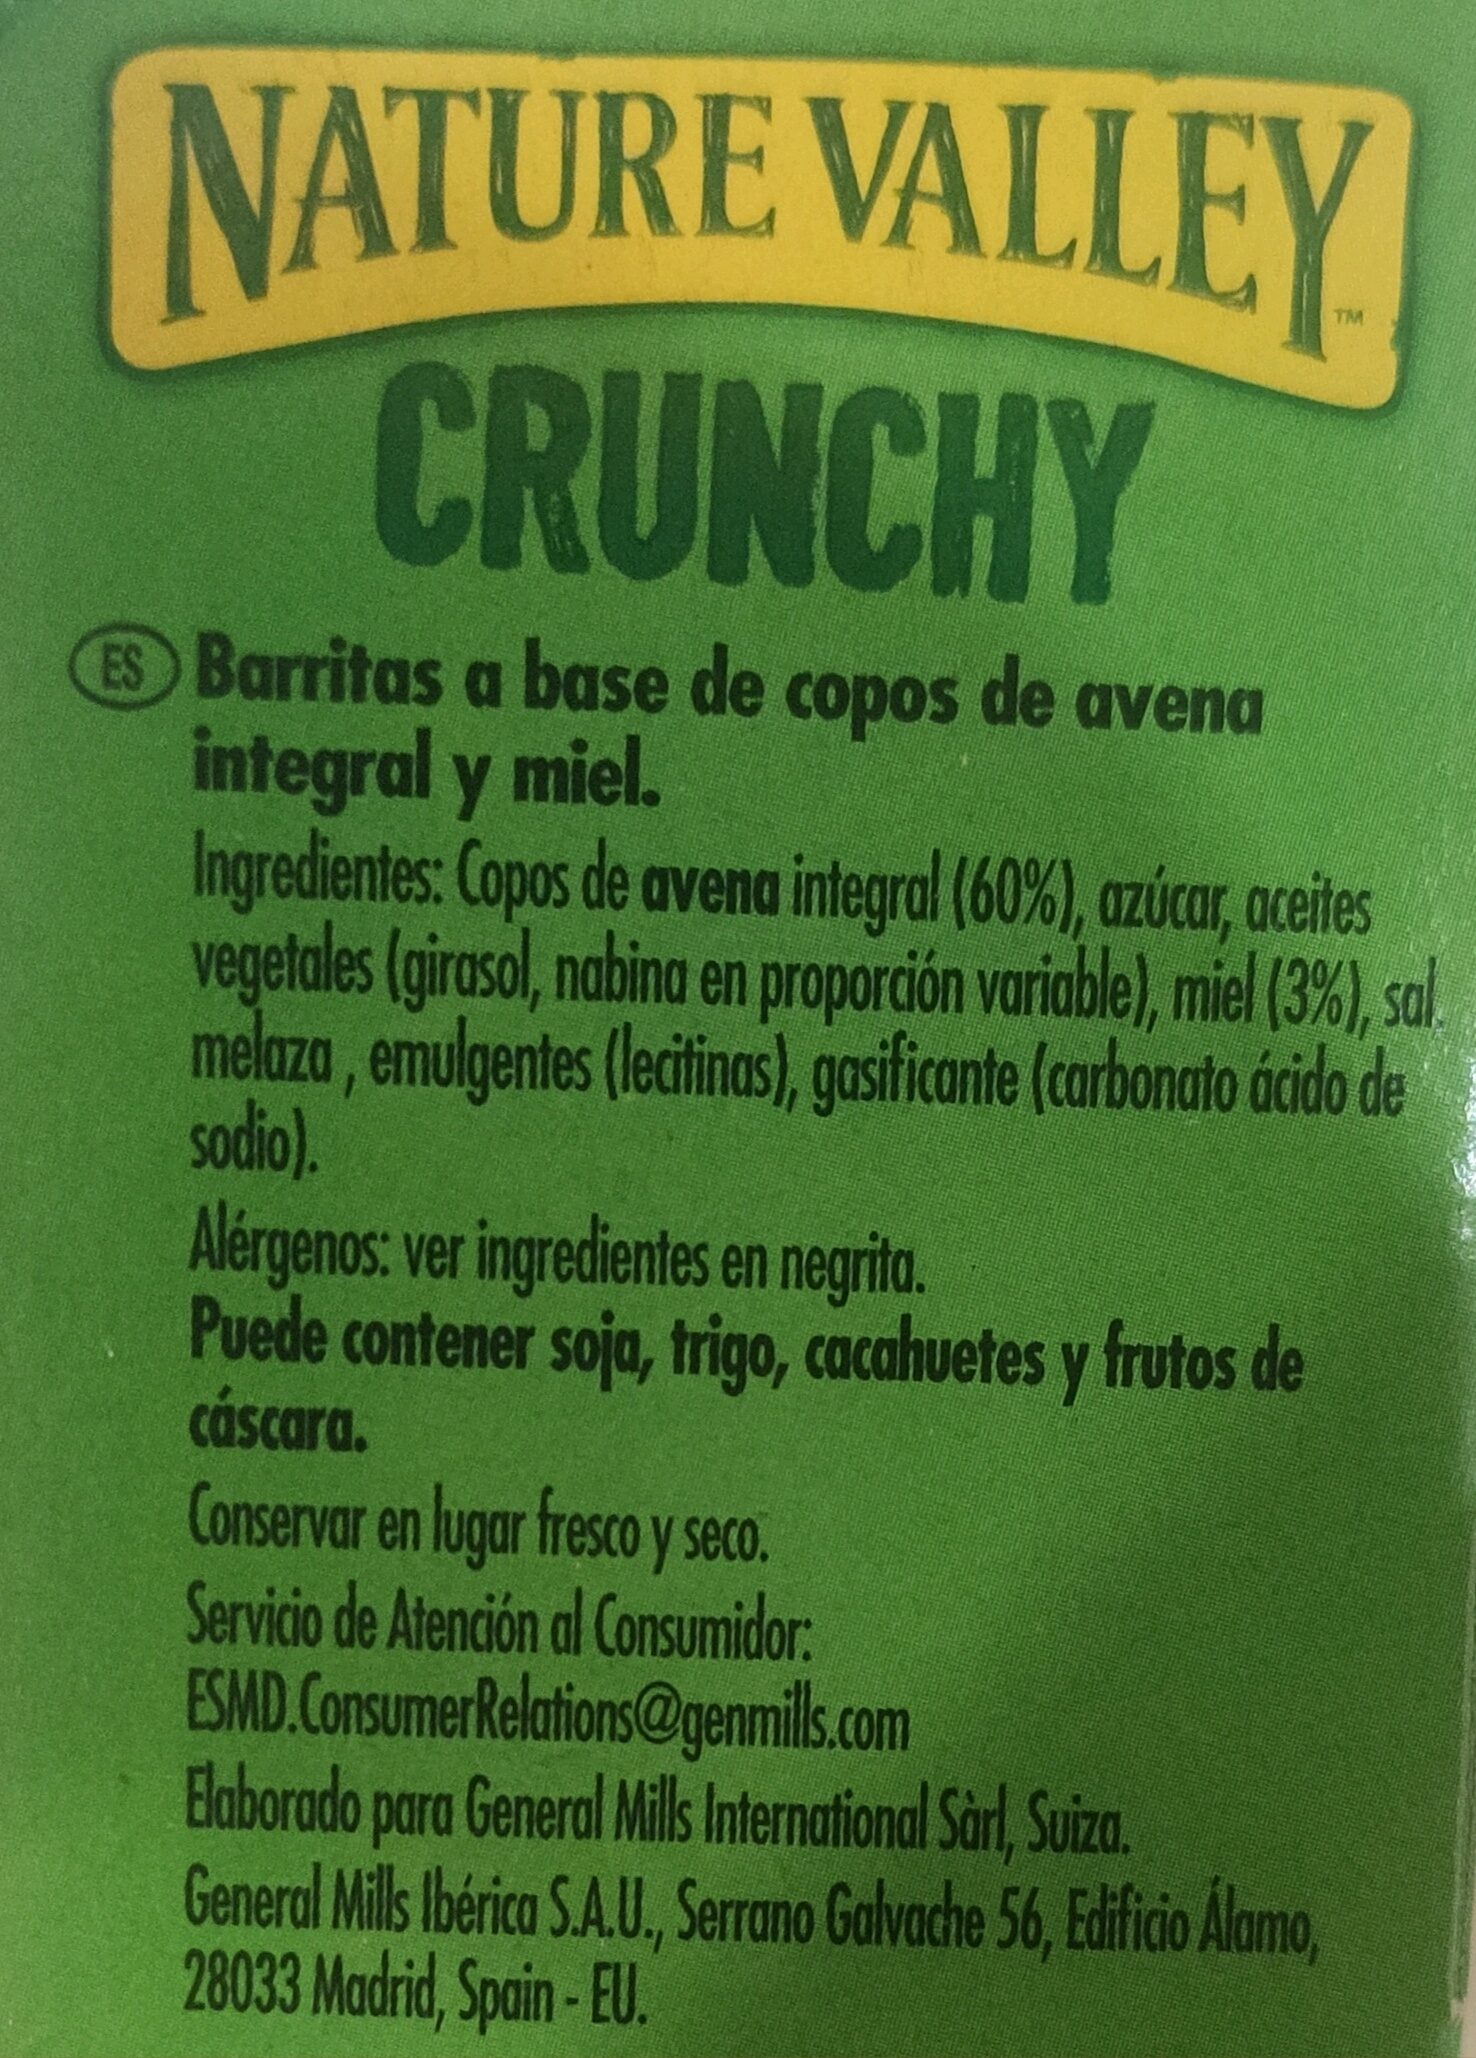 Crunchy Avena y Miel - Ingredients - es